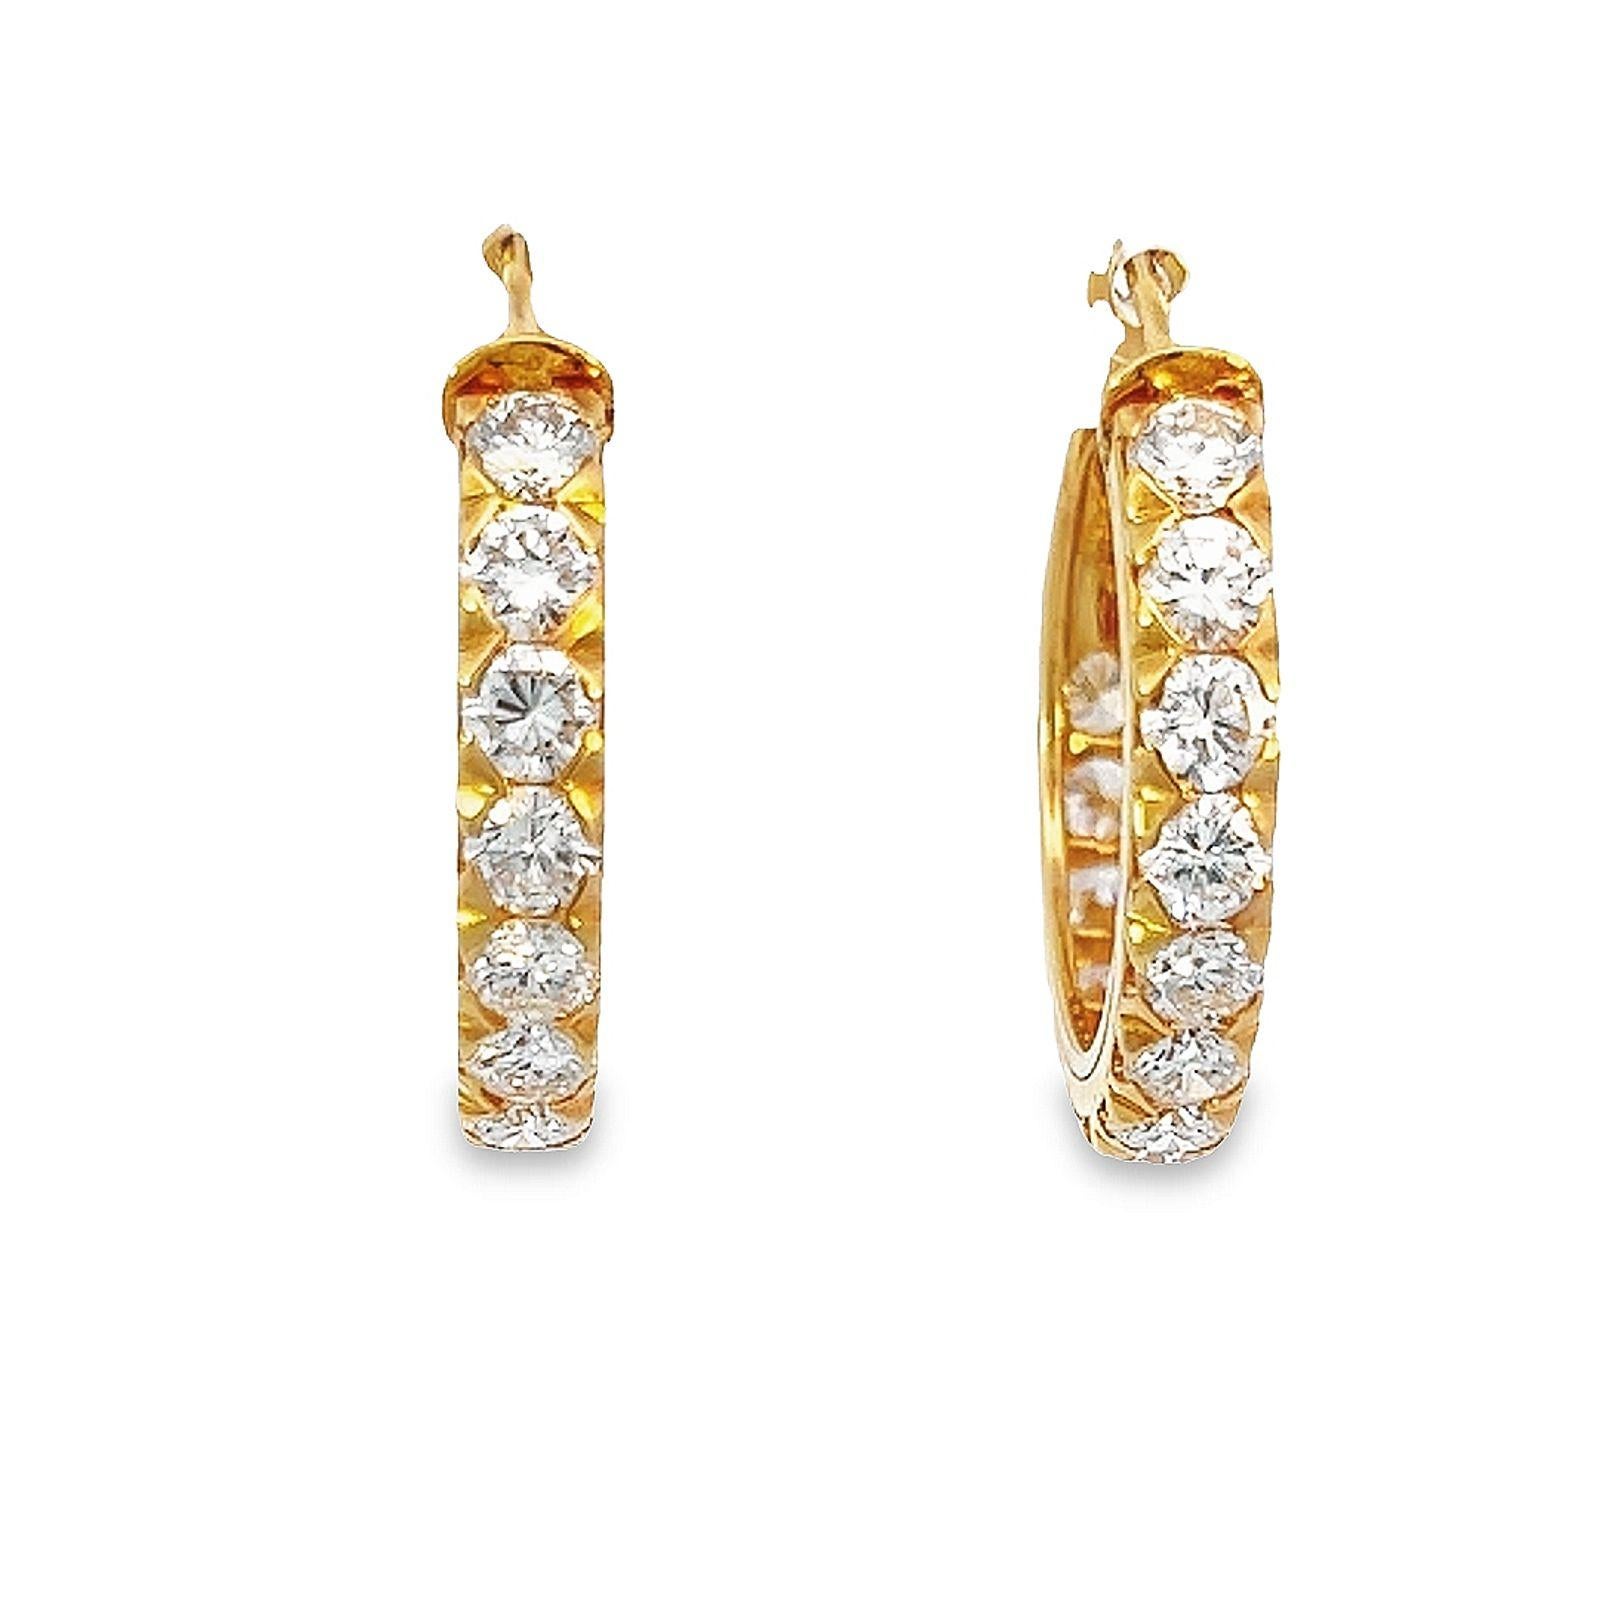 Les boucles d'oreilles en or jaune 18 carats sont ornées de diamants ronds de taille brillant de 4 carats, de couleur G/H et de pureté VS. Ces pierres éblouissantes possèdent un éclat captivant et une pureté qui en font un choix idéal pour le port